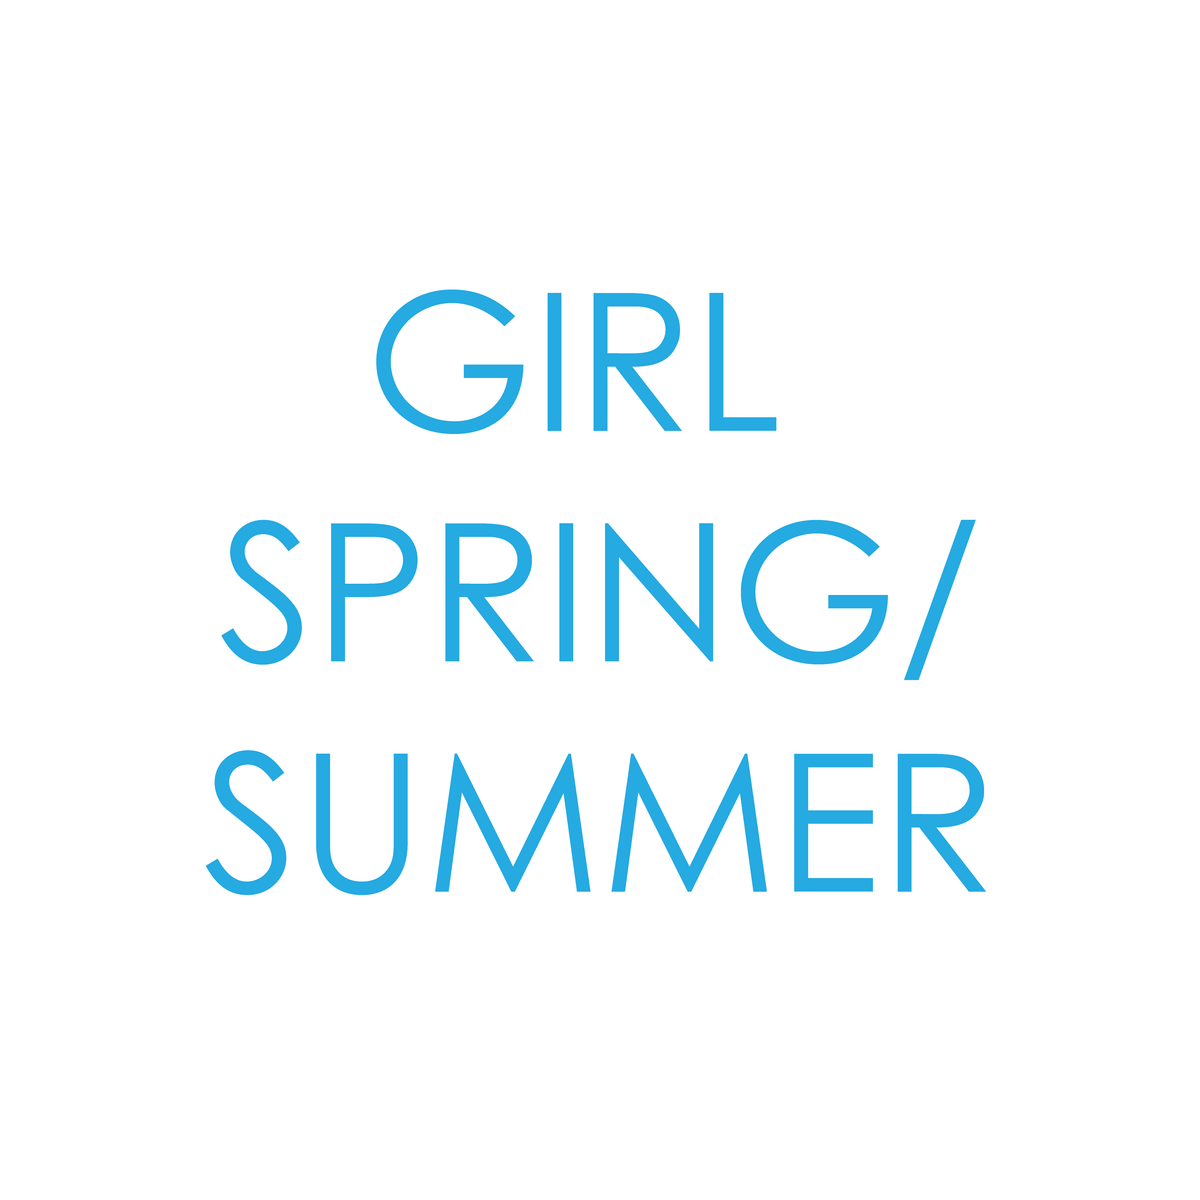 GIRL SPRING/SUMMER